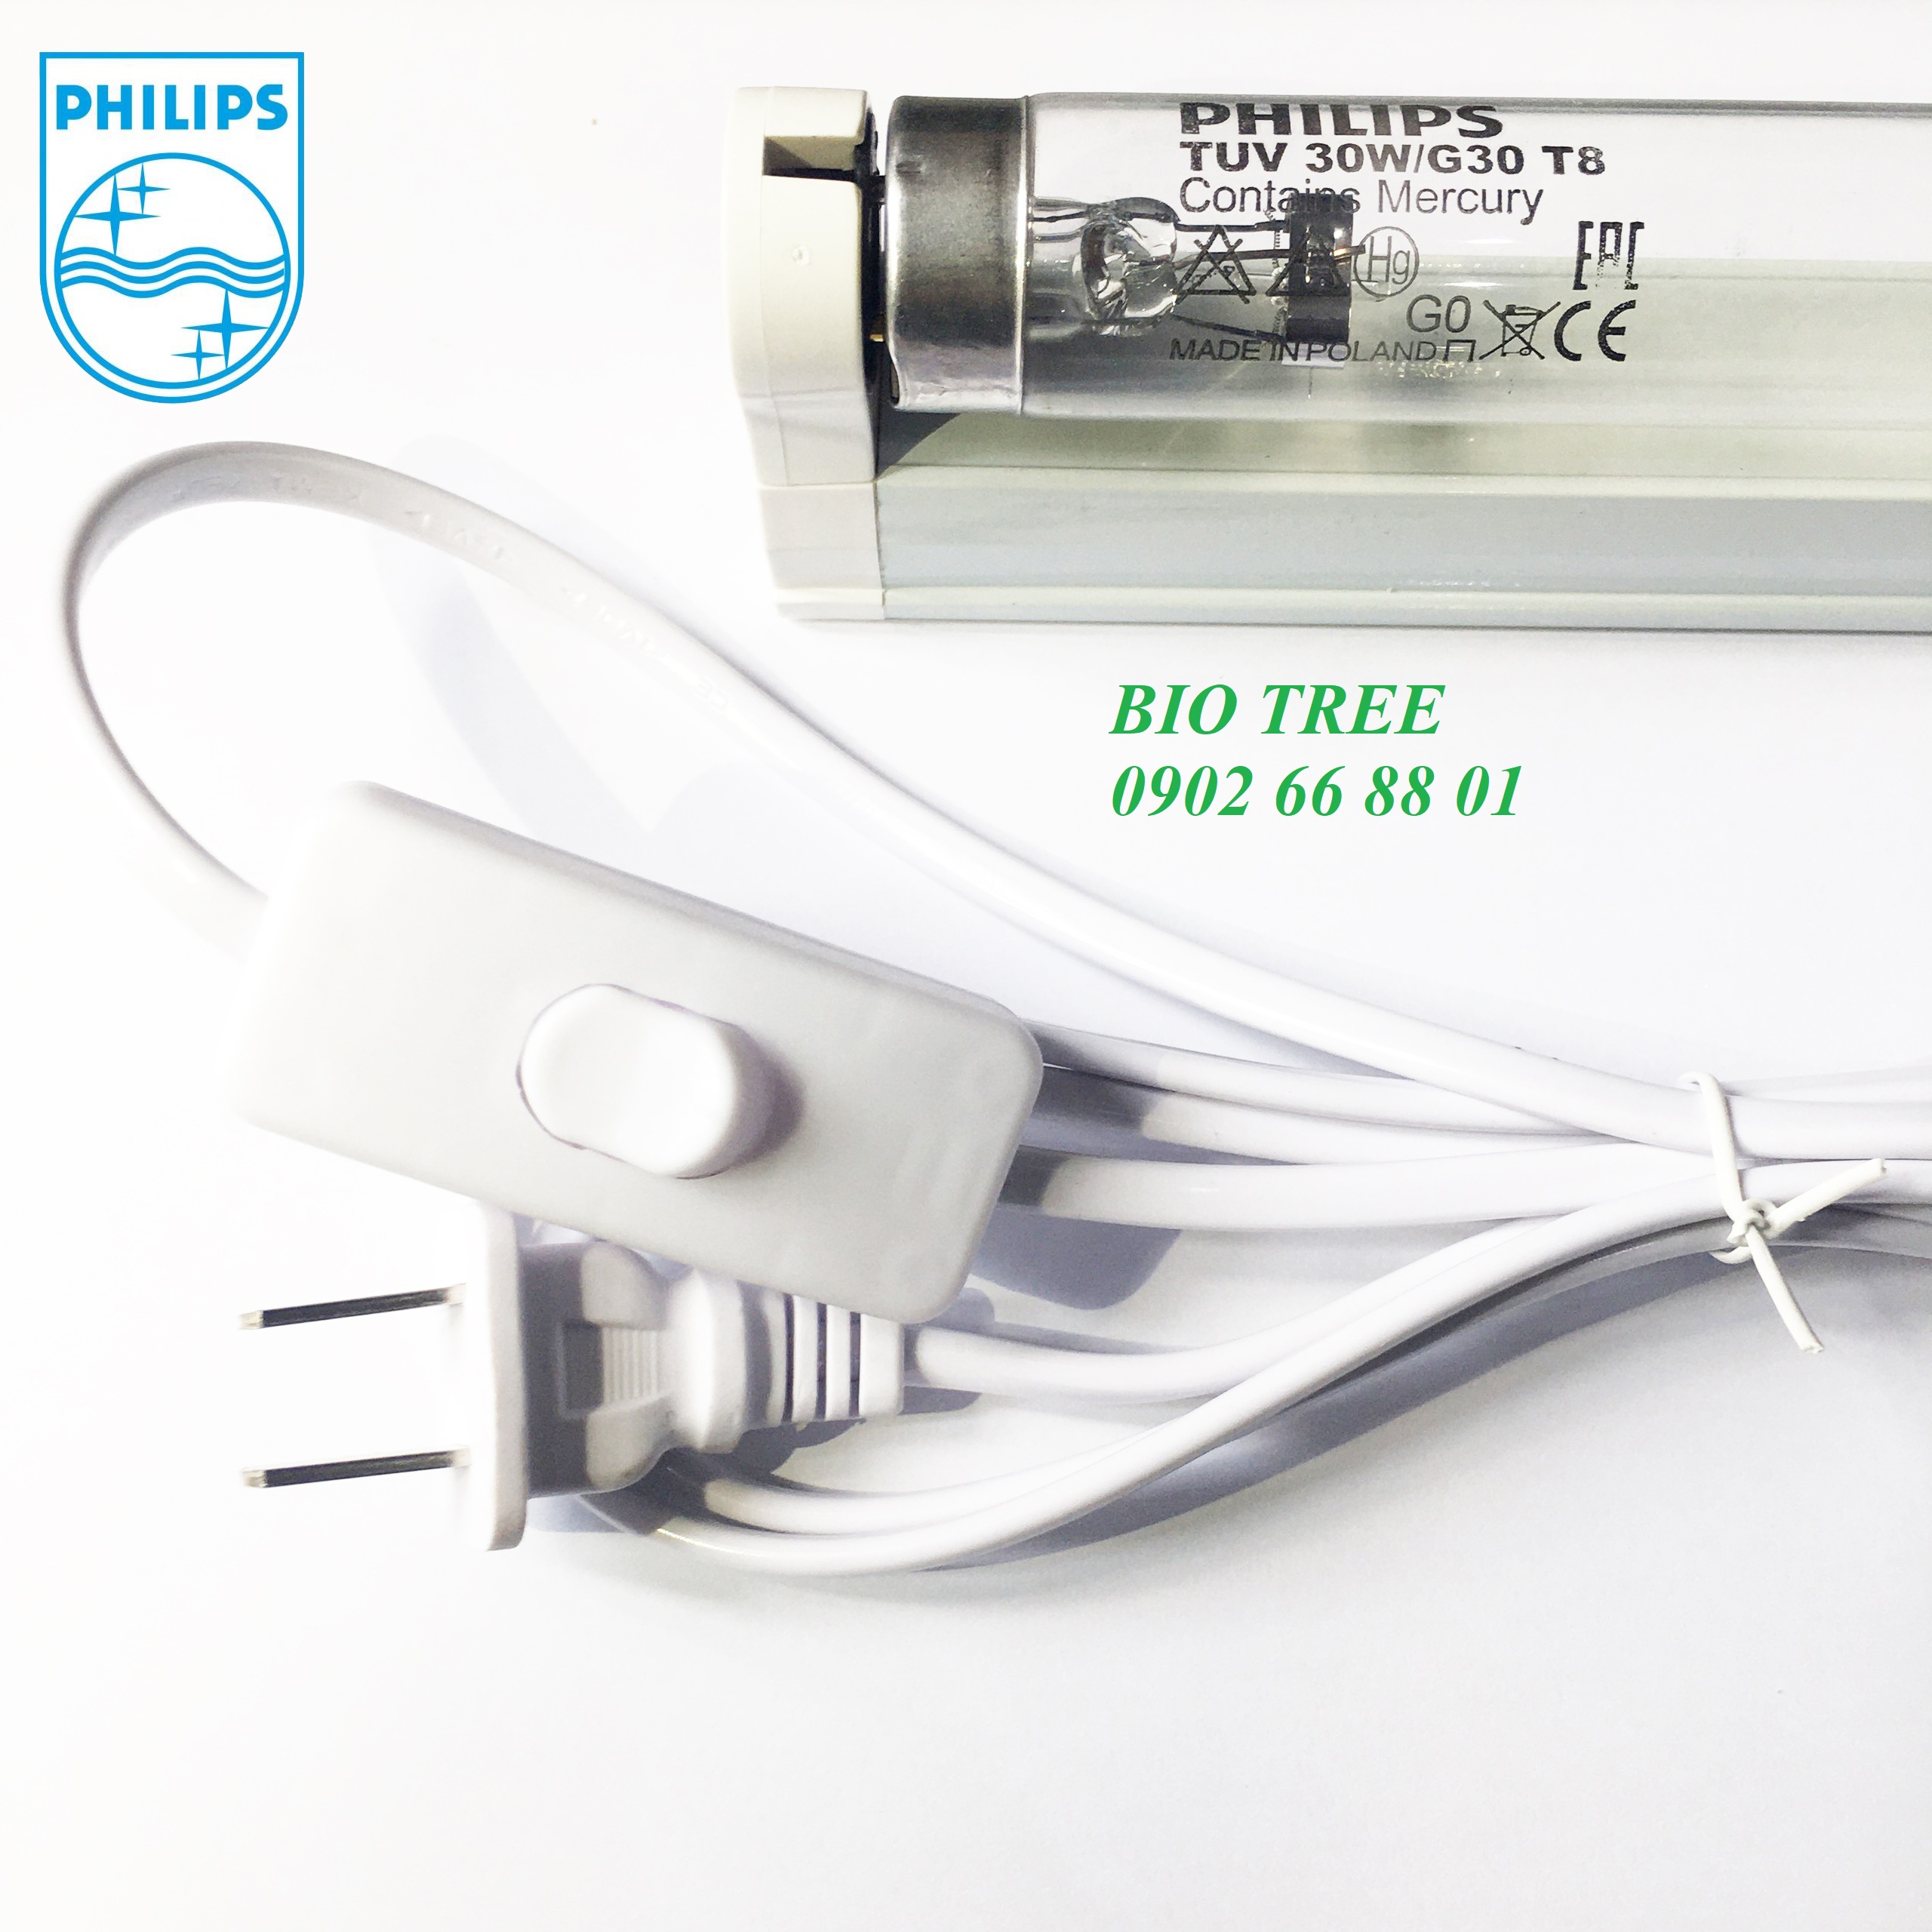 Bộ Bóng đèn UV diệt khuẩn Philips TUV 30W G30 T8 dài 90cm